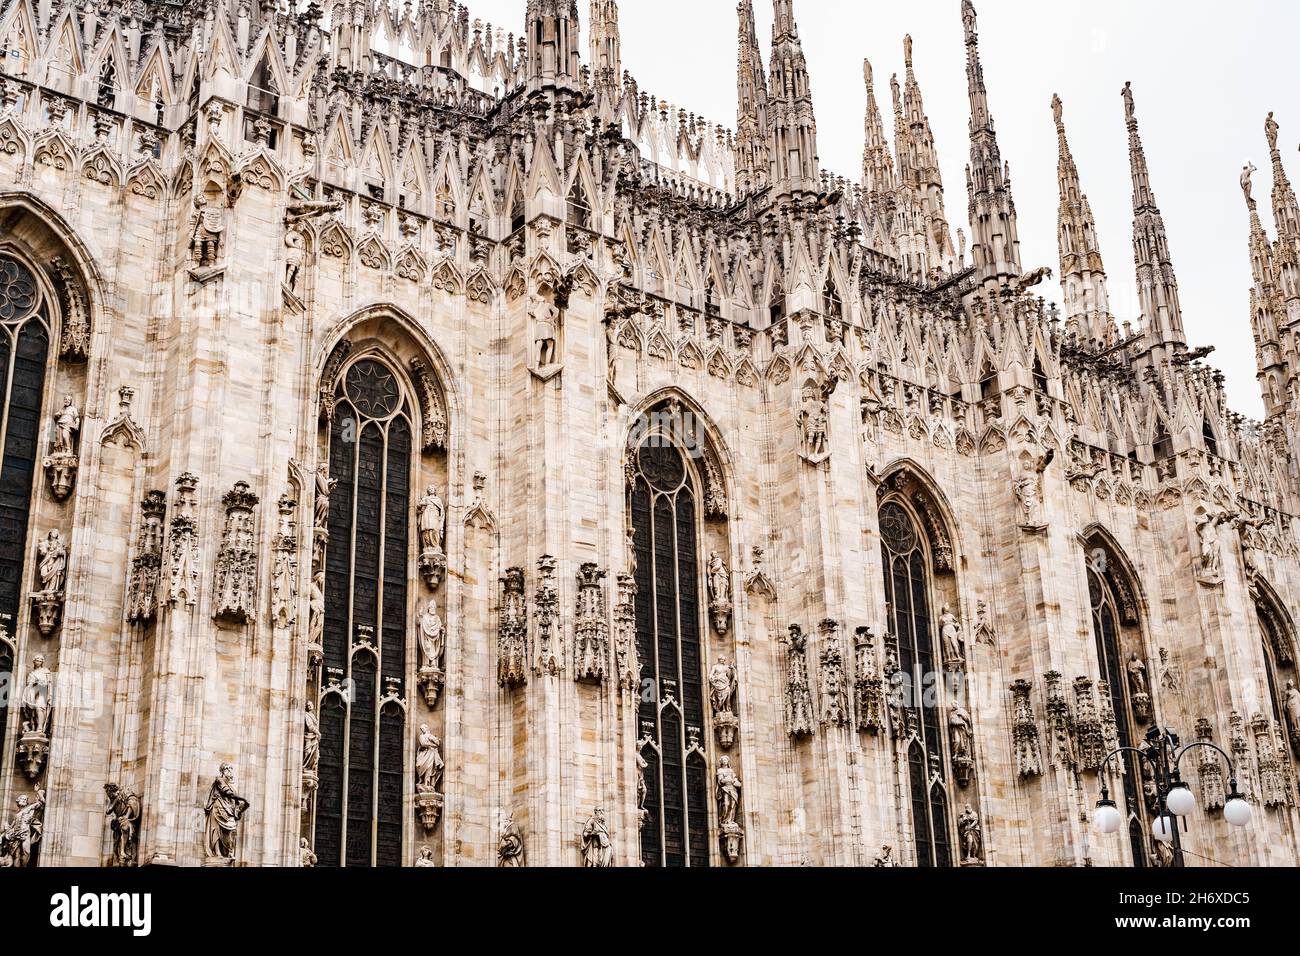 Alte finestre ad arco sulla facciata del Duomo. Milano, Italia Foto Stock